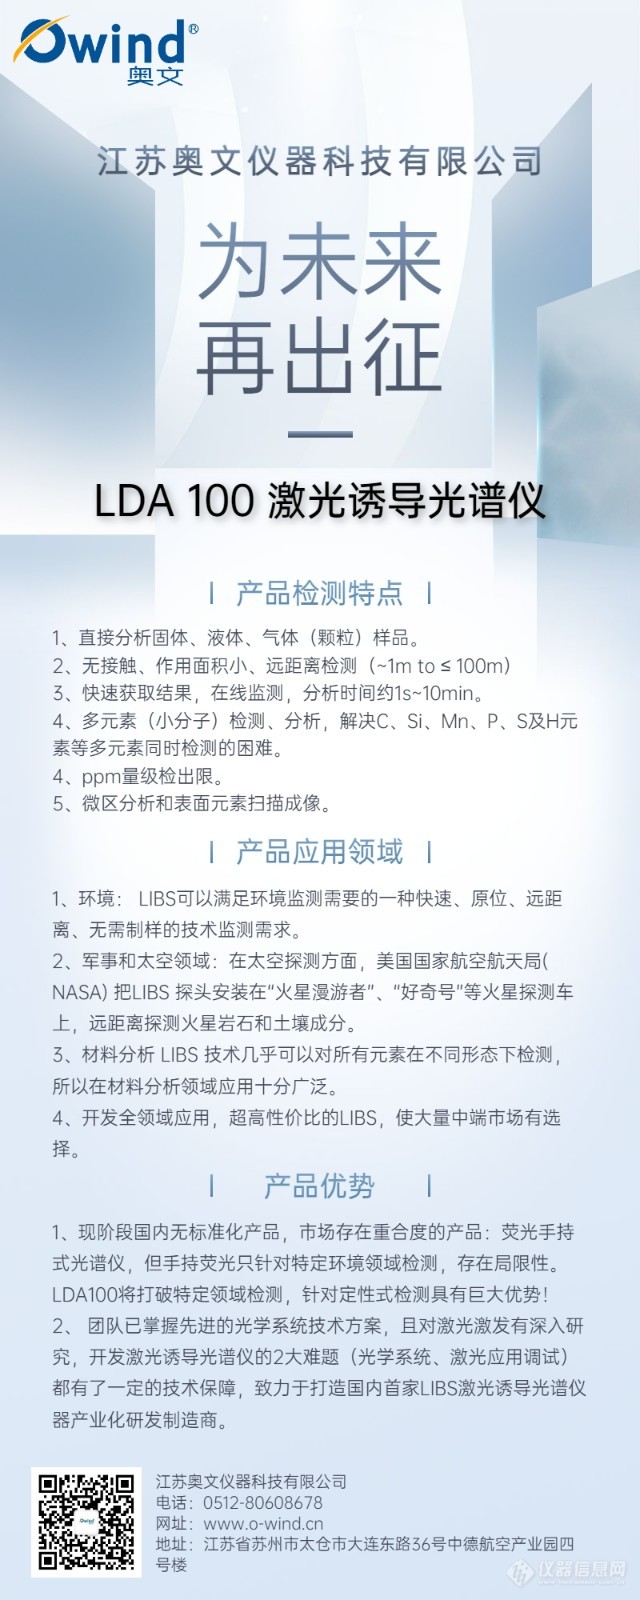 LDA 100激光诱导光谱仪宣传海报 (1).jpg